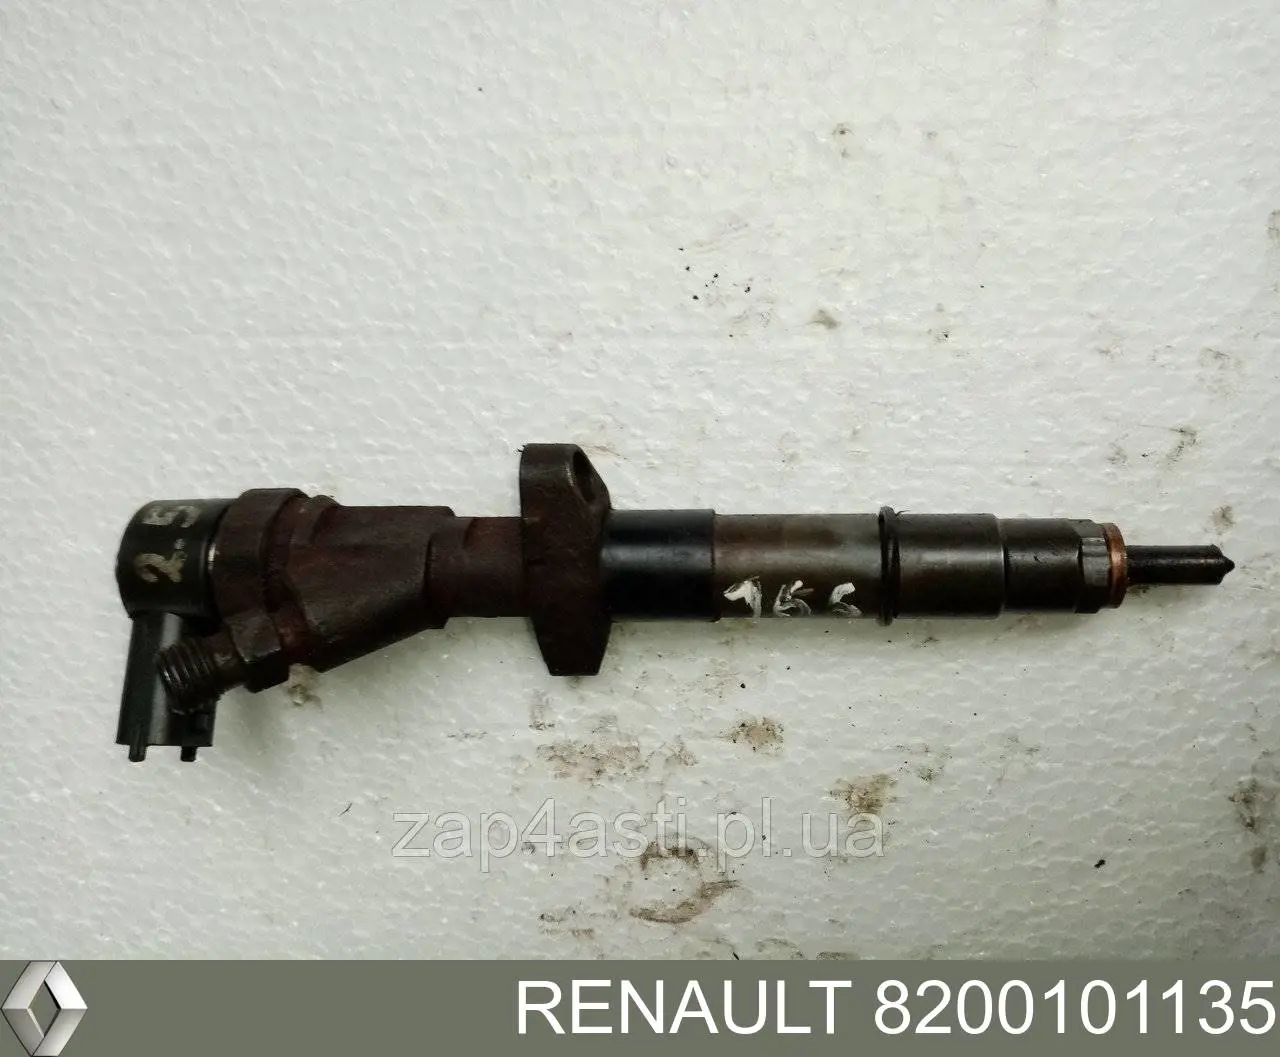 8200101135 Renault (RVI) injetor de injeção de combustível